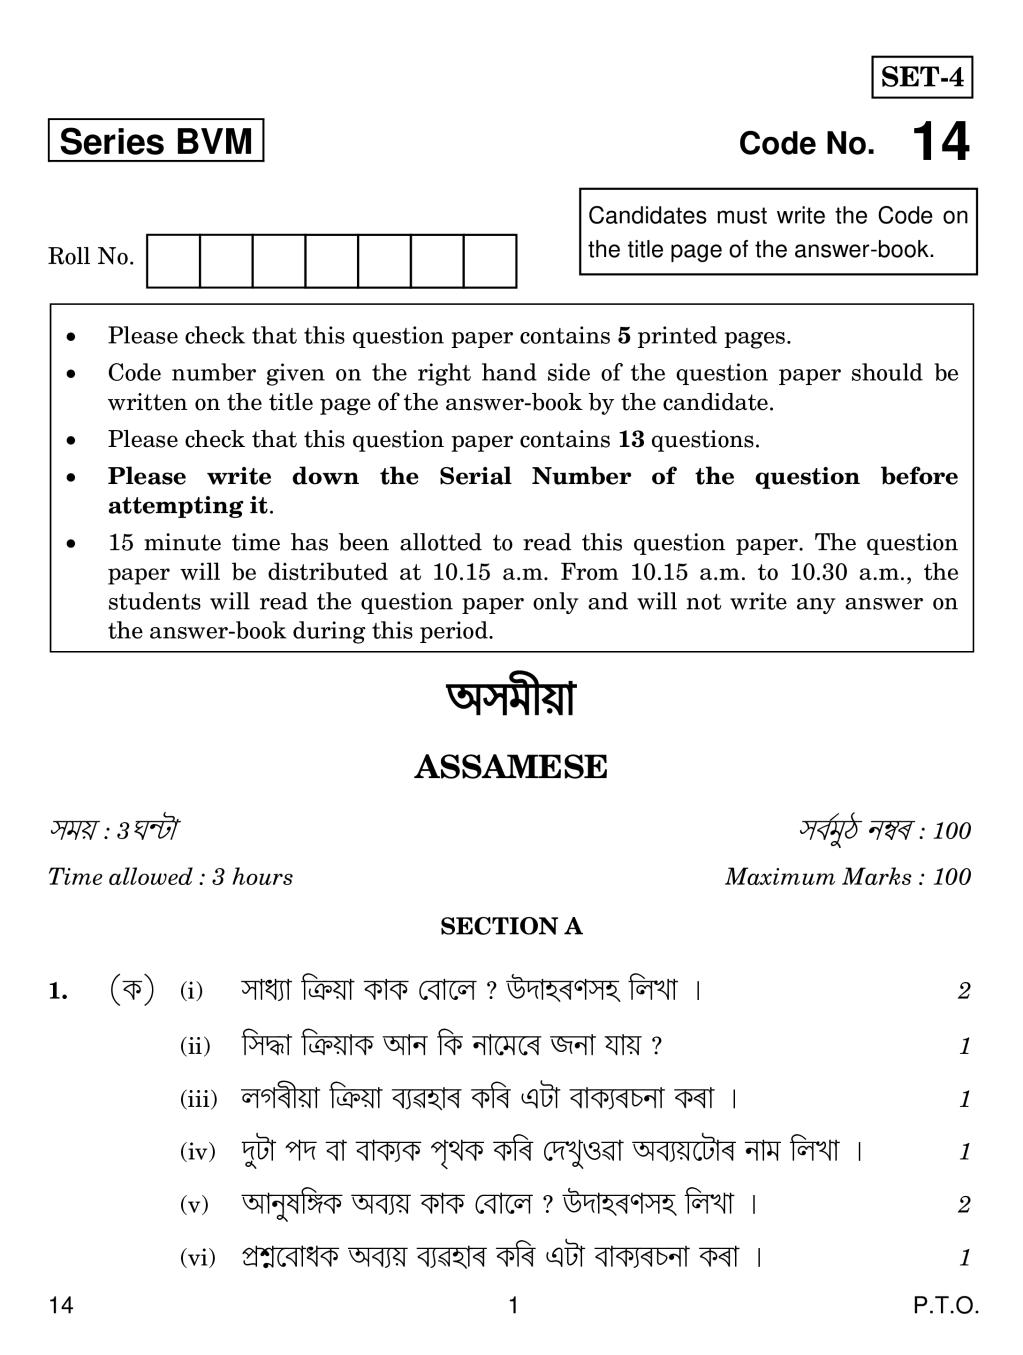 CBSE Class 12 Assamese Question Paper 2019 - Page 1